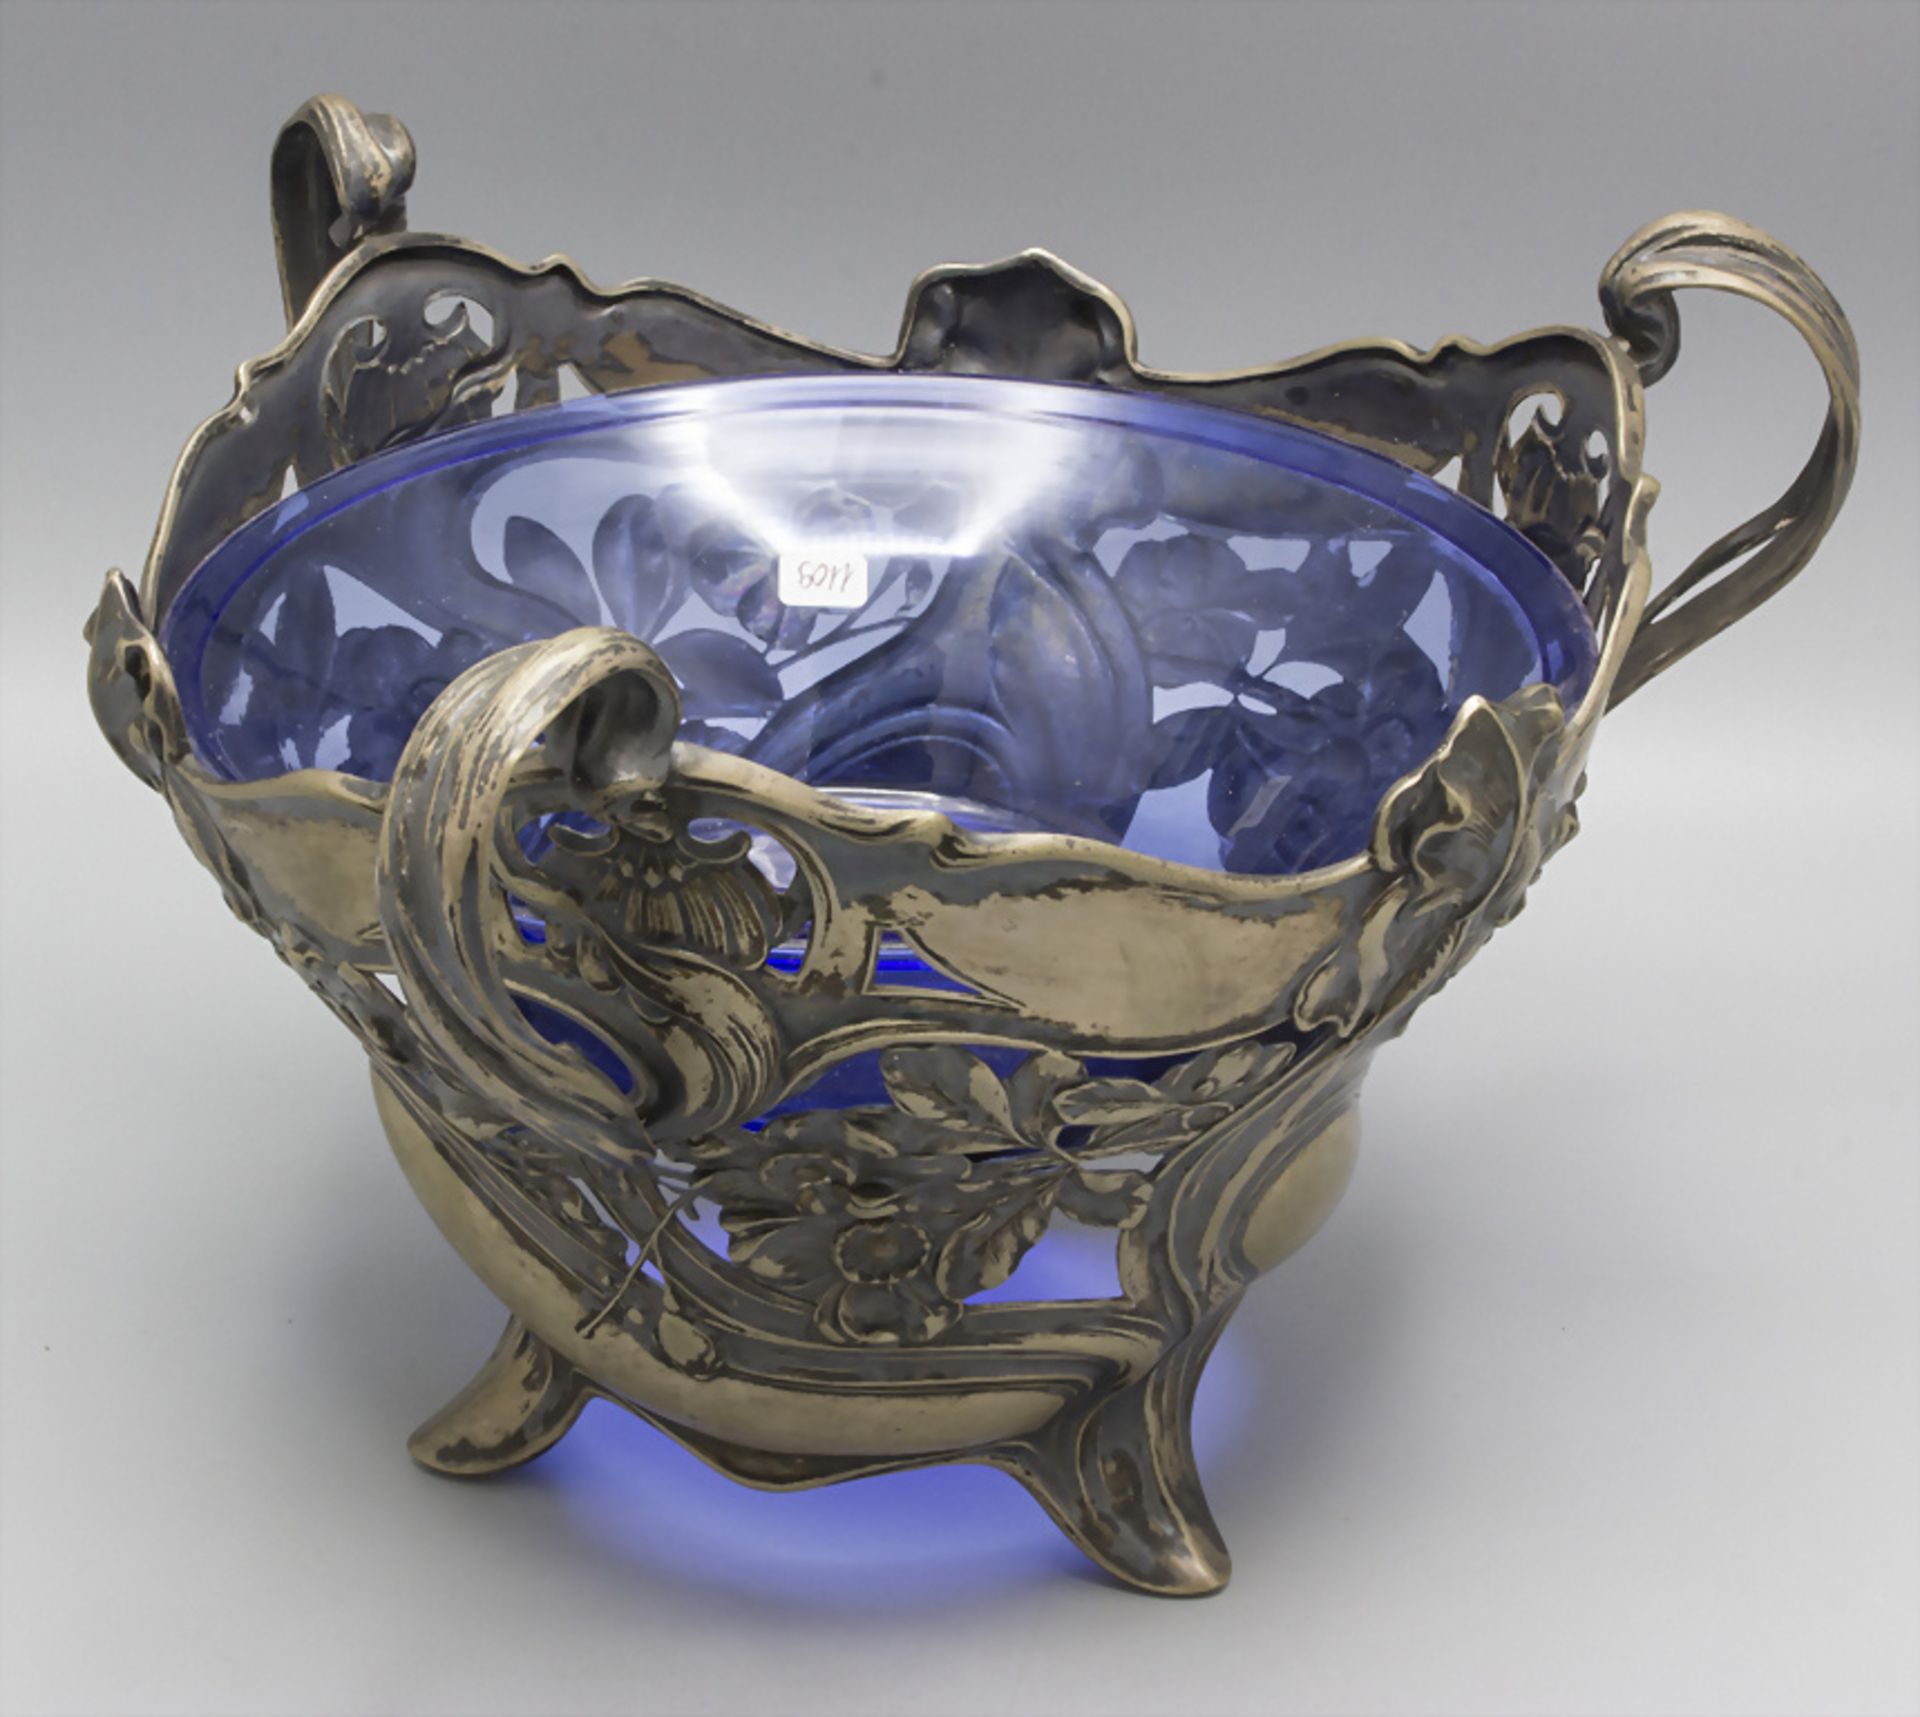 Jugendstil Henkelschale / An Art Nouveau sterling silver bowl with stylised ivy pattern, ... - Image 2 of 4